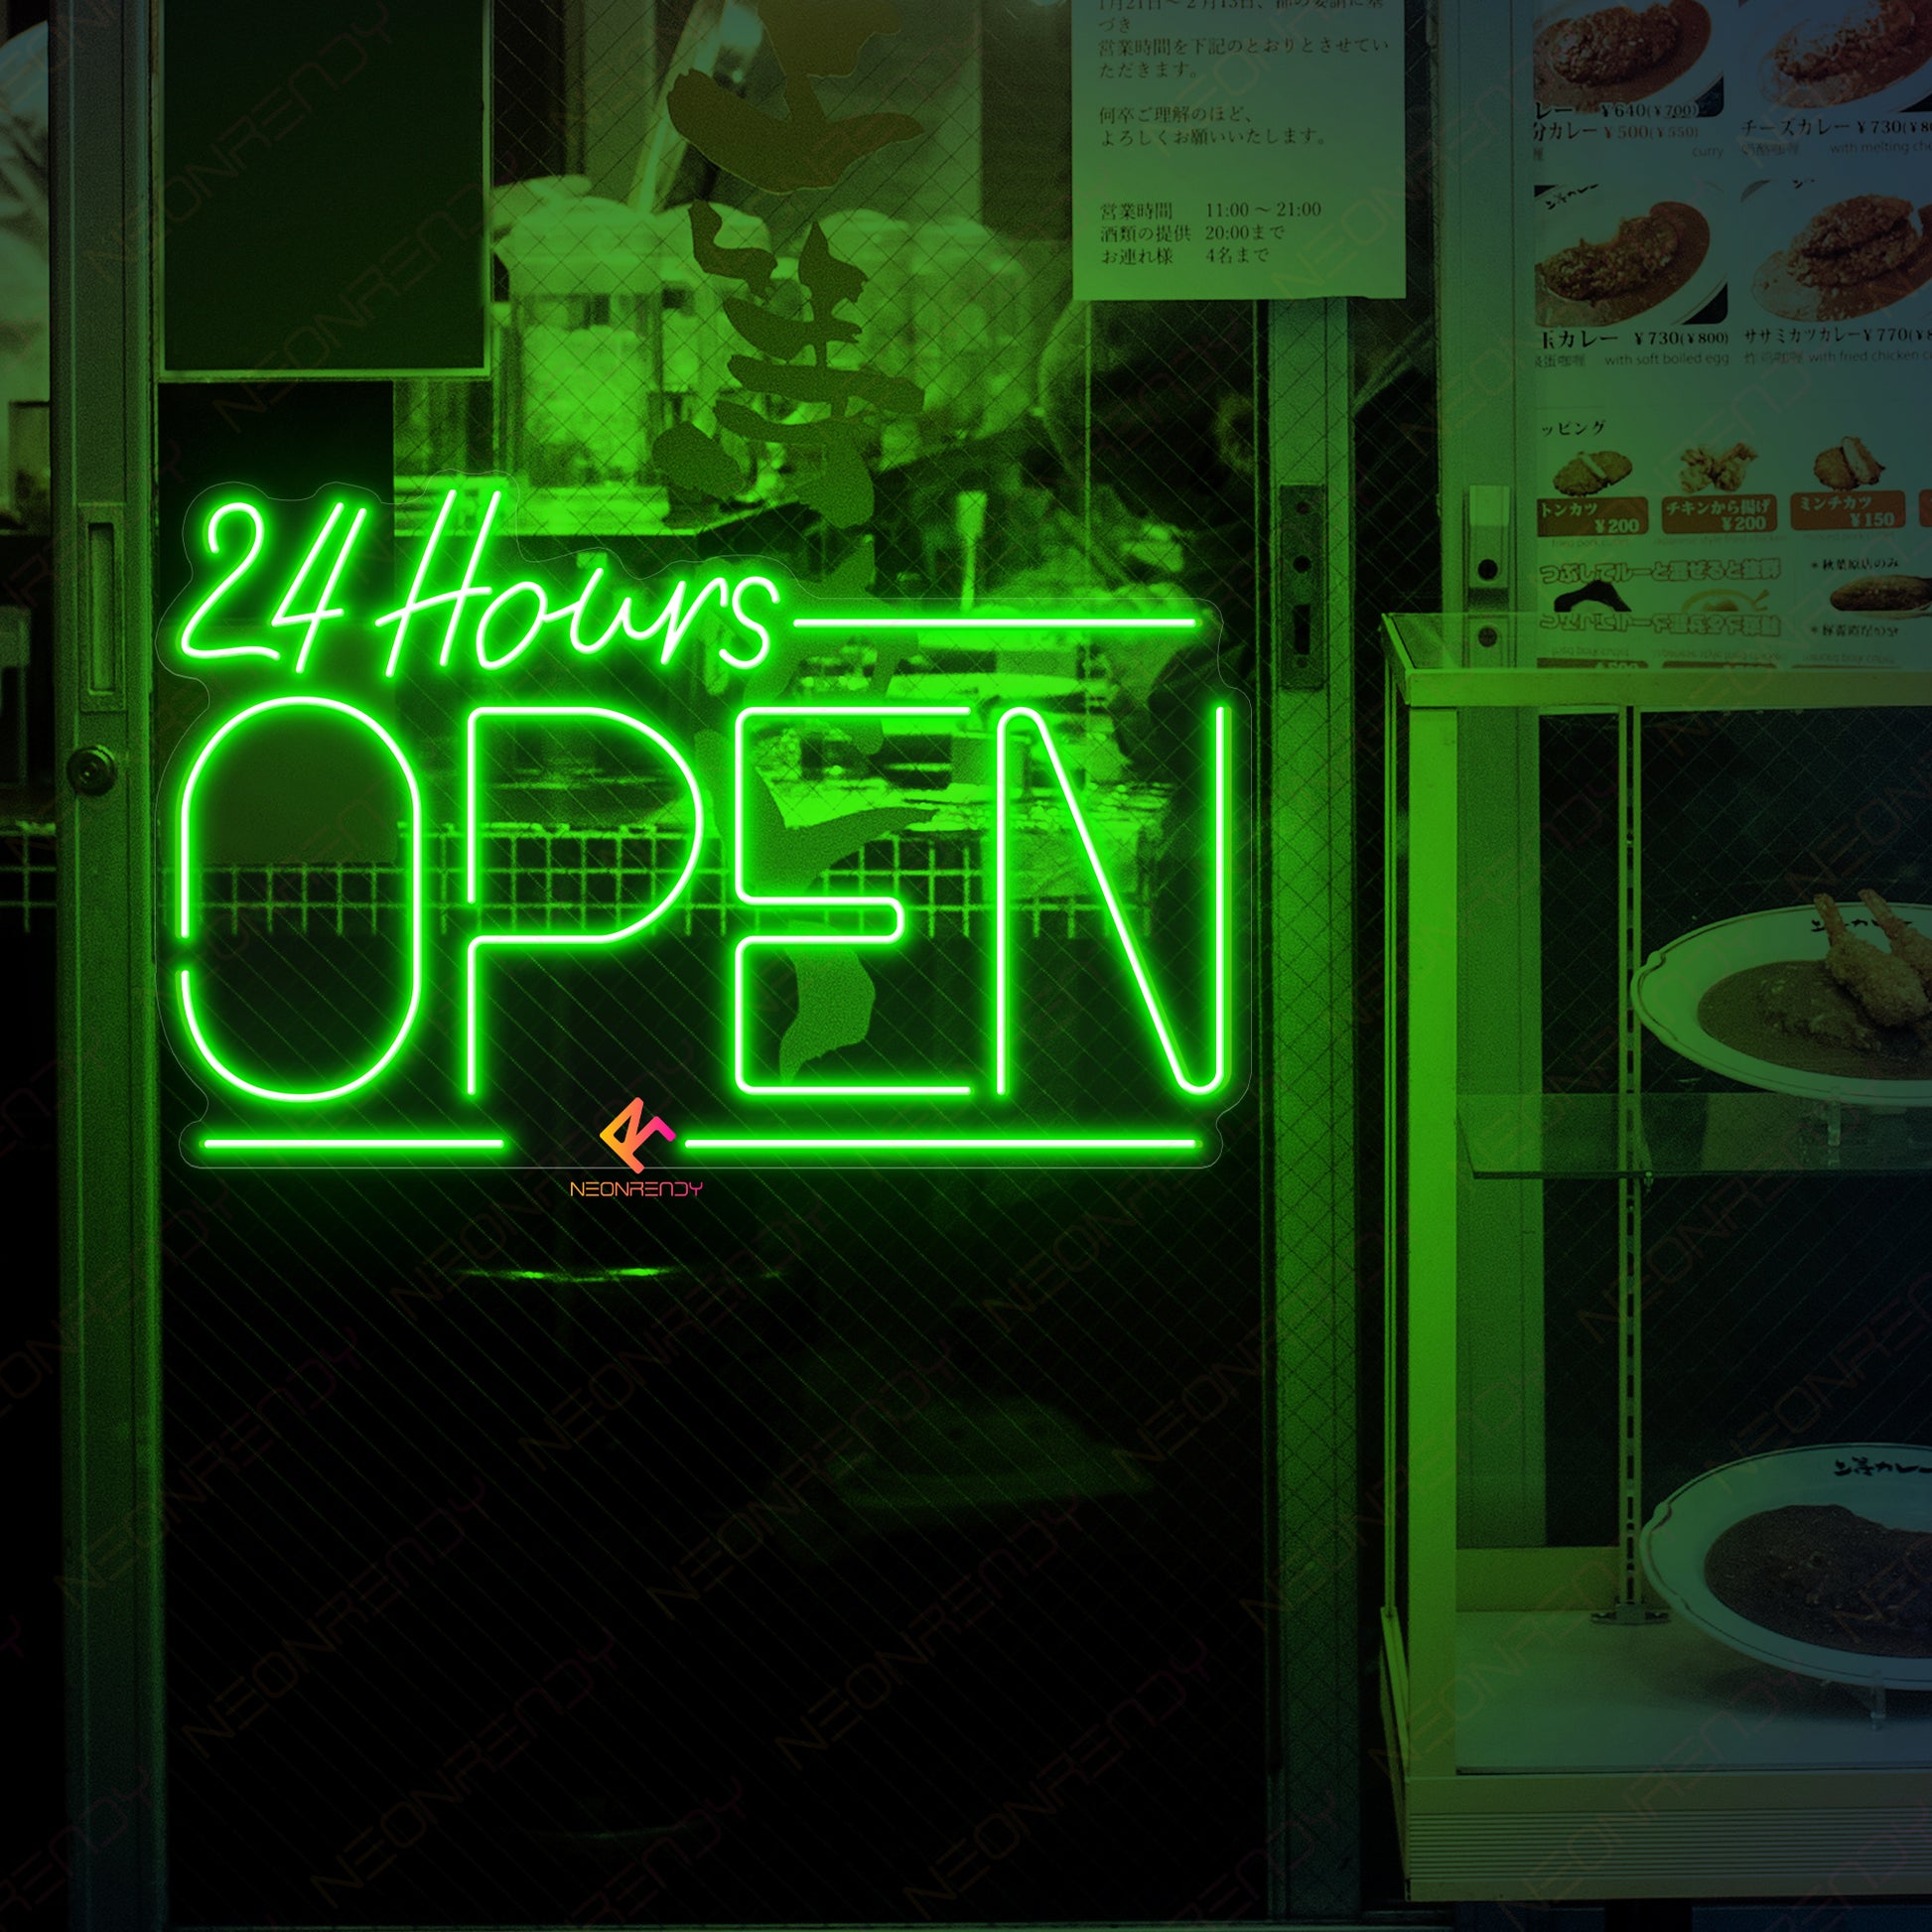 Neon Open 24 Hours Sign Open Led Light green